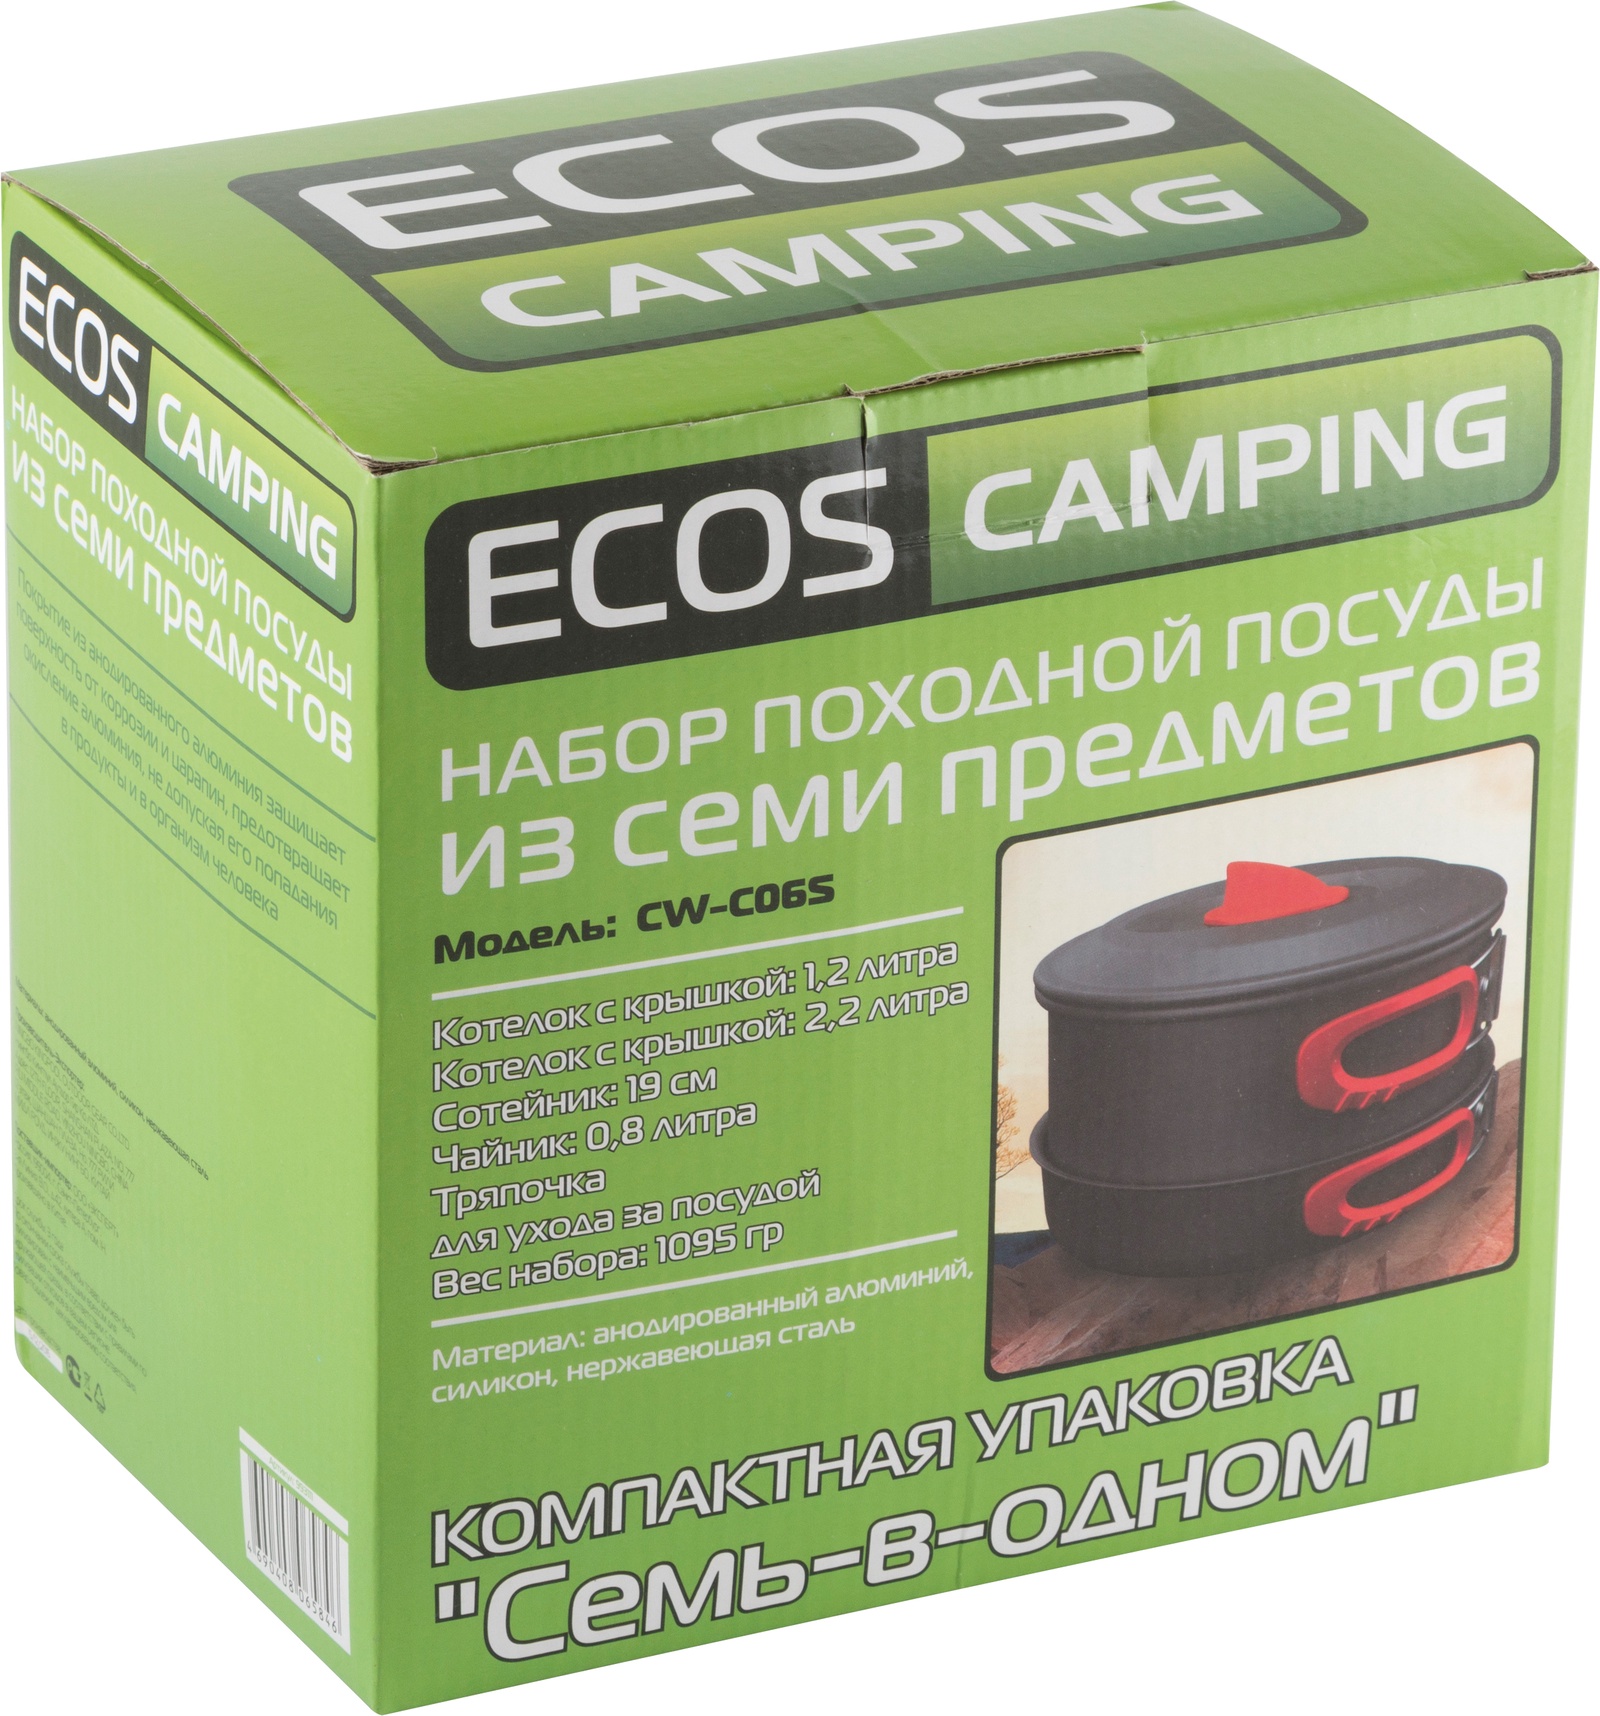 Ecos camping. Набор туристической посуды Ecos cw008, 7 шт.. Кружка Ecos Camping. Ecos Camping посуда. Ecos модификация оборудования.